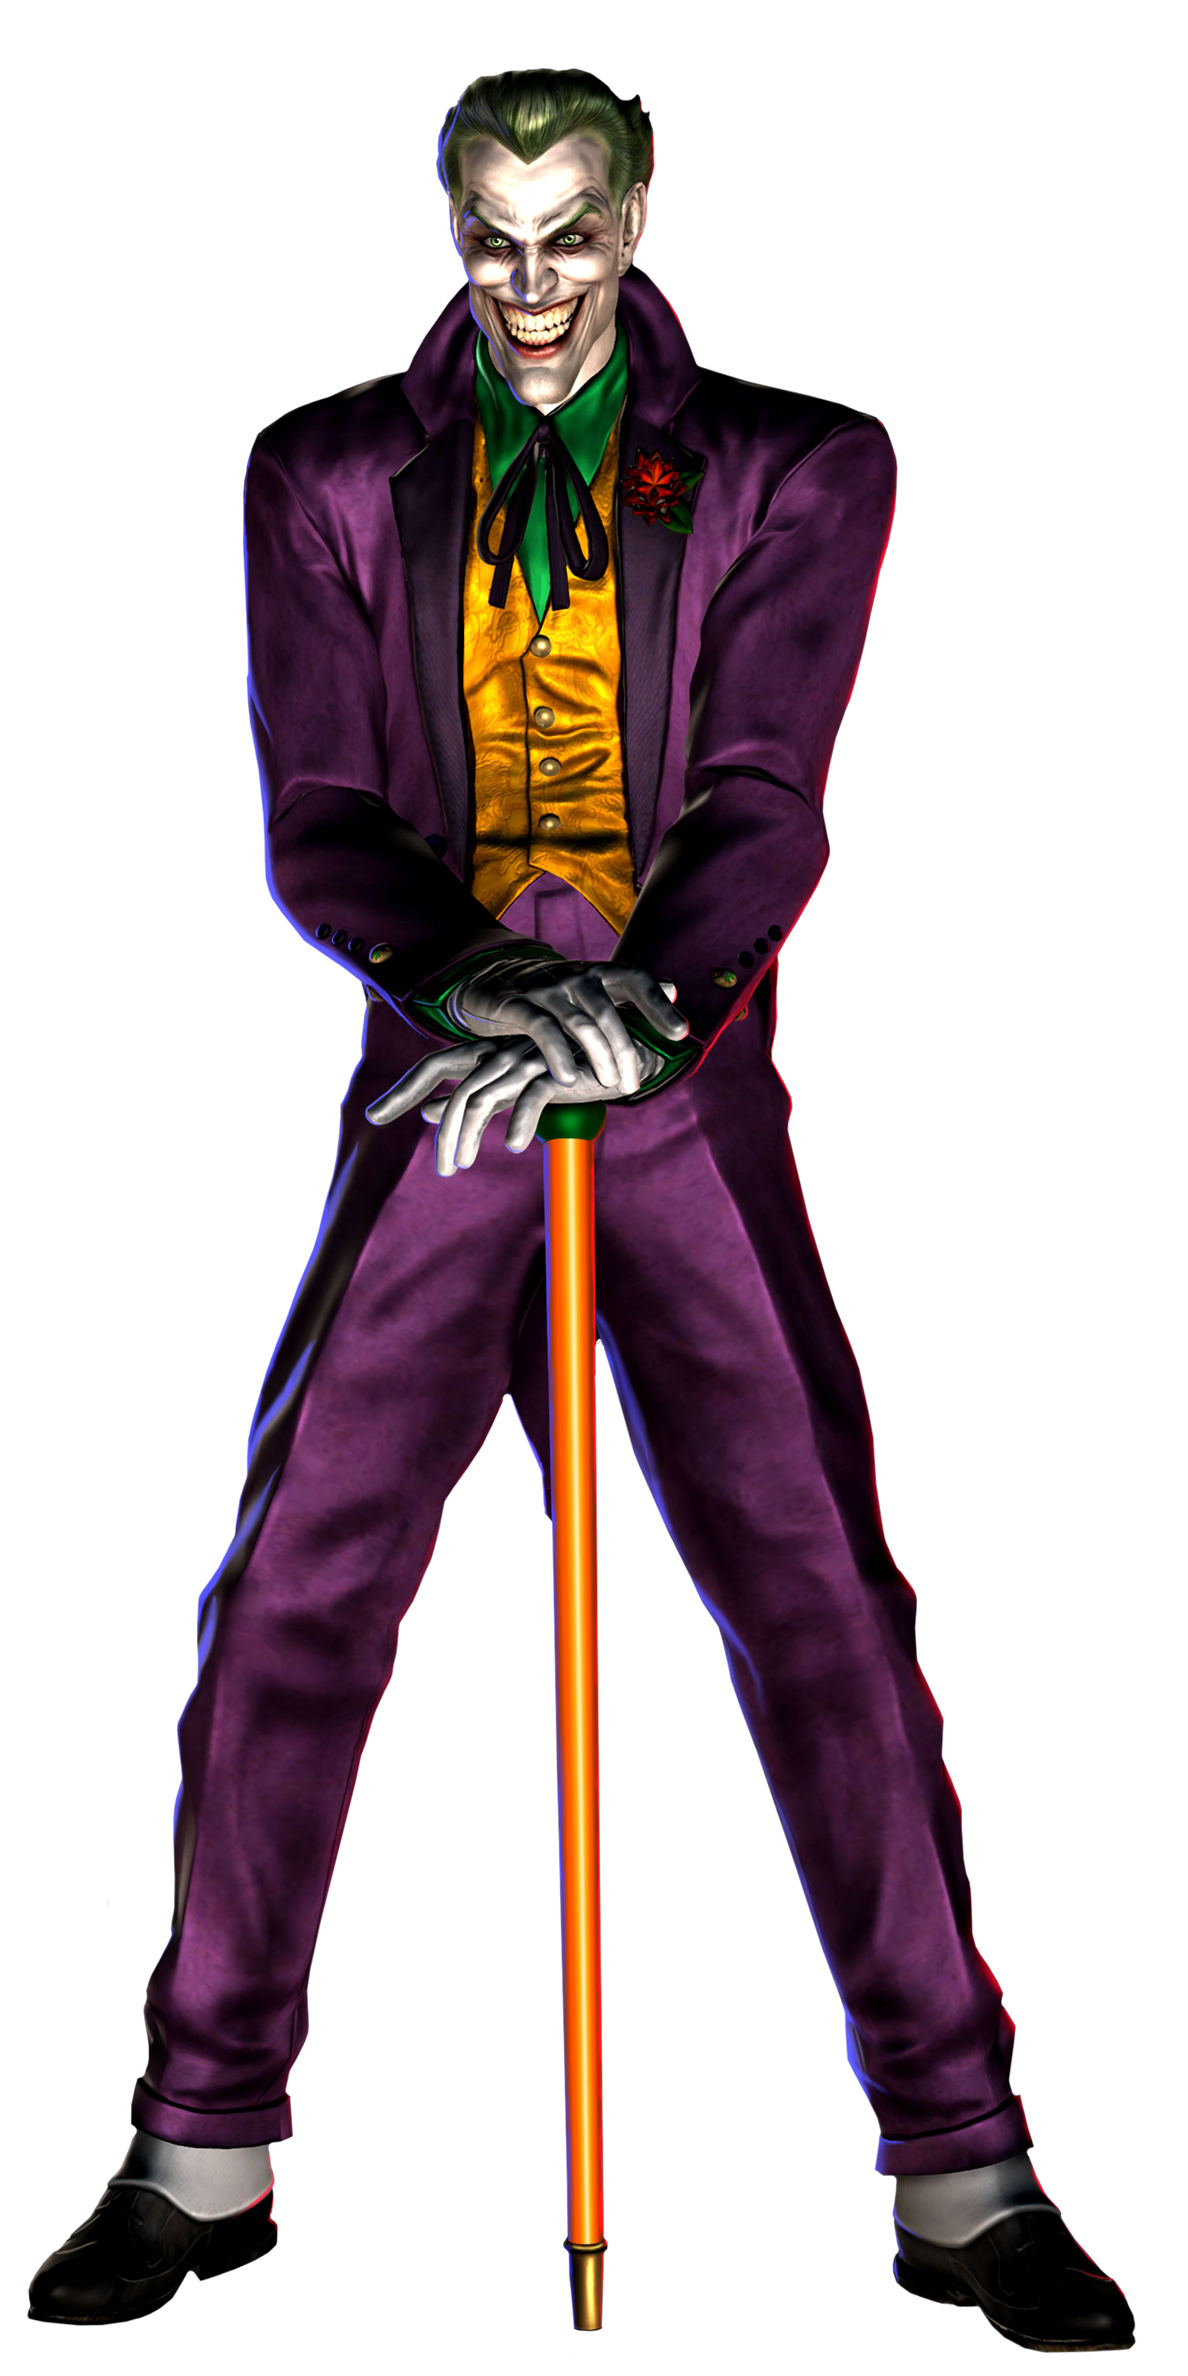 Download PNG image - Halloween Joker Transparent Background 